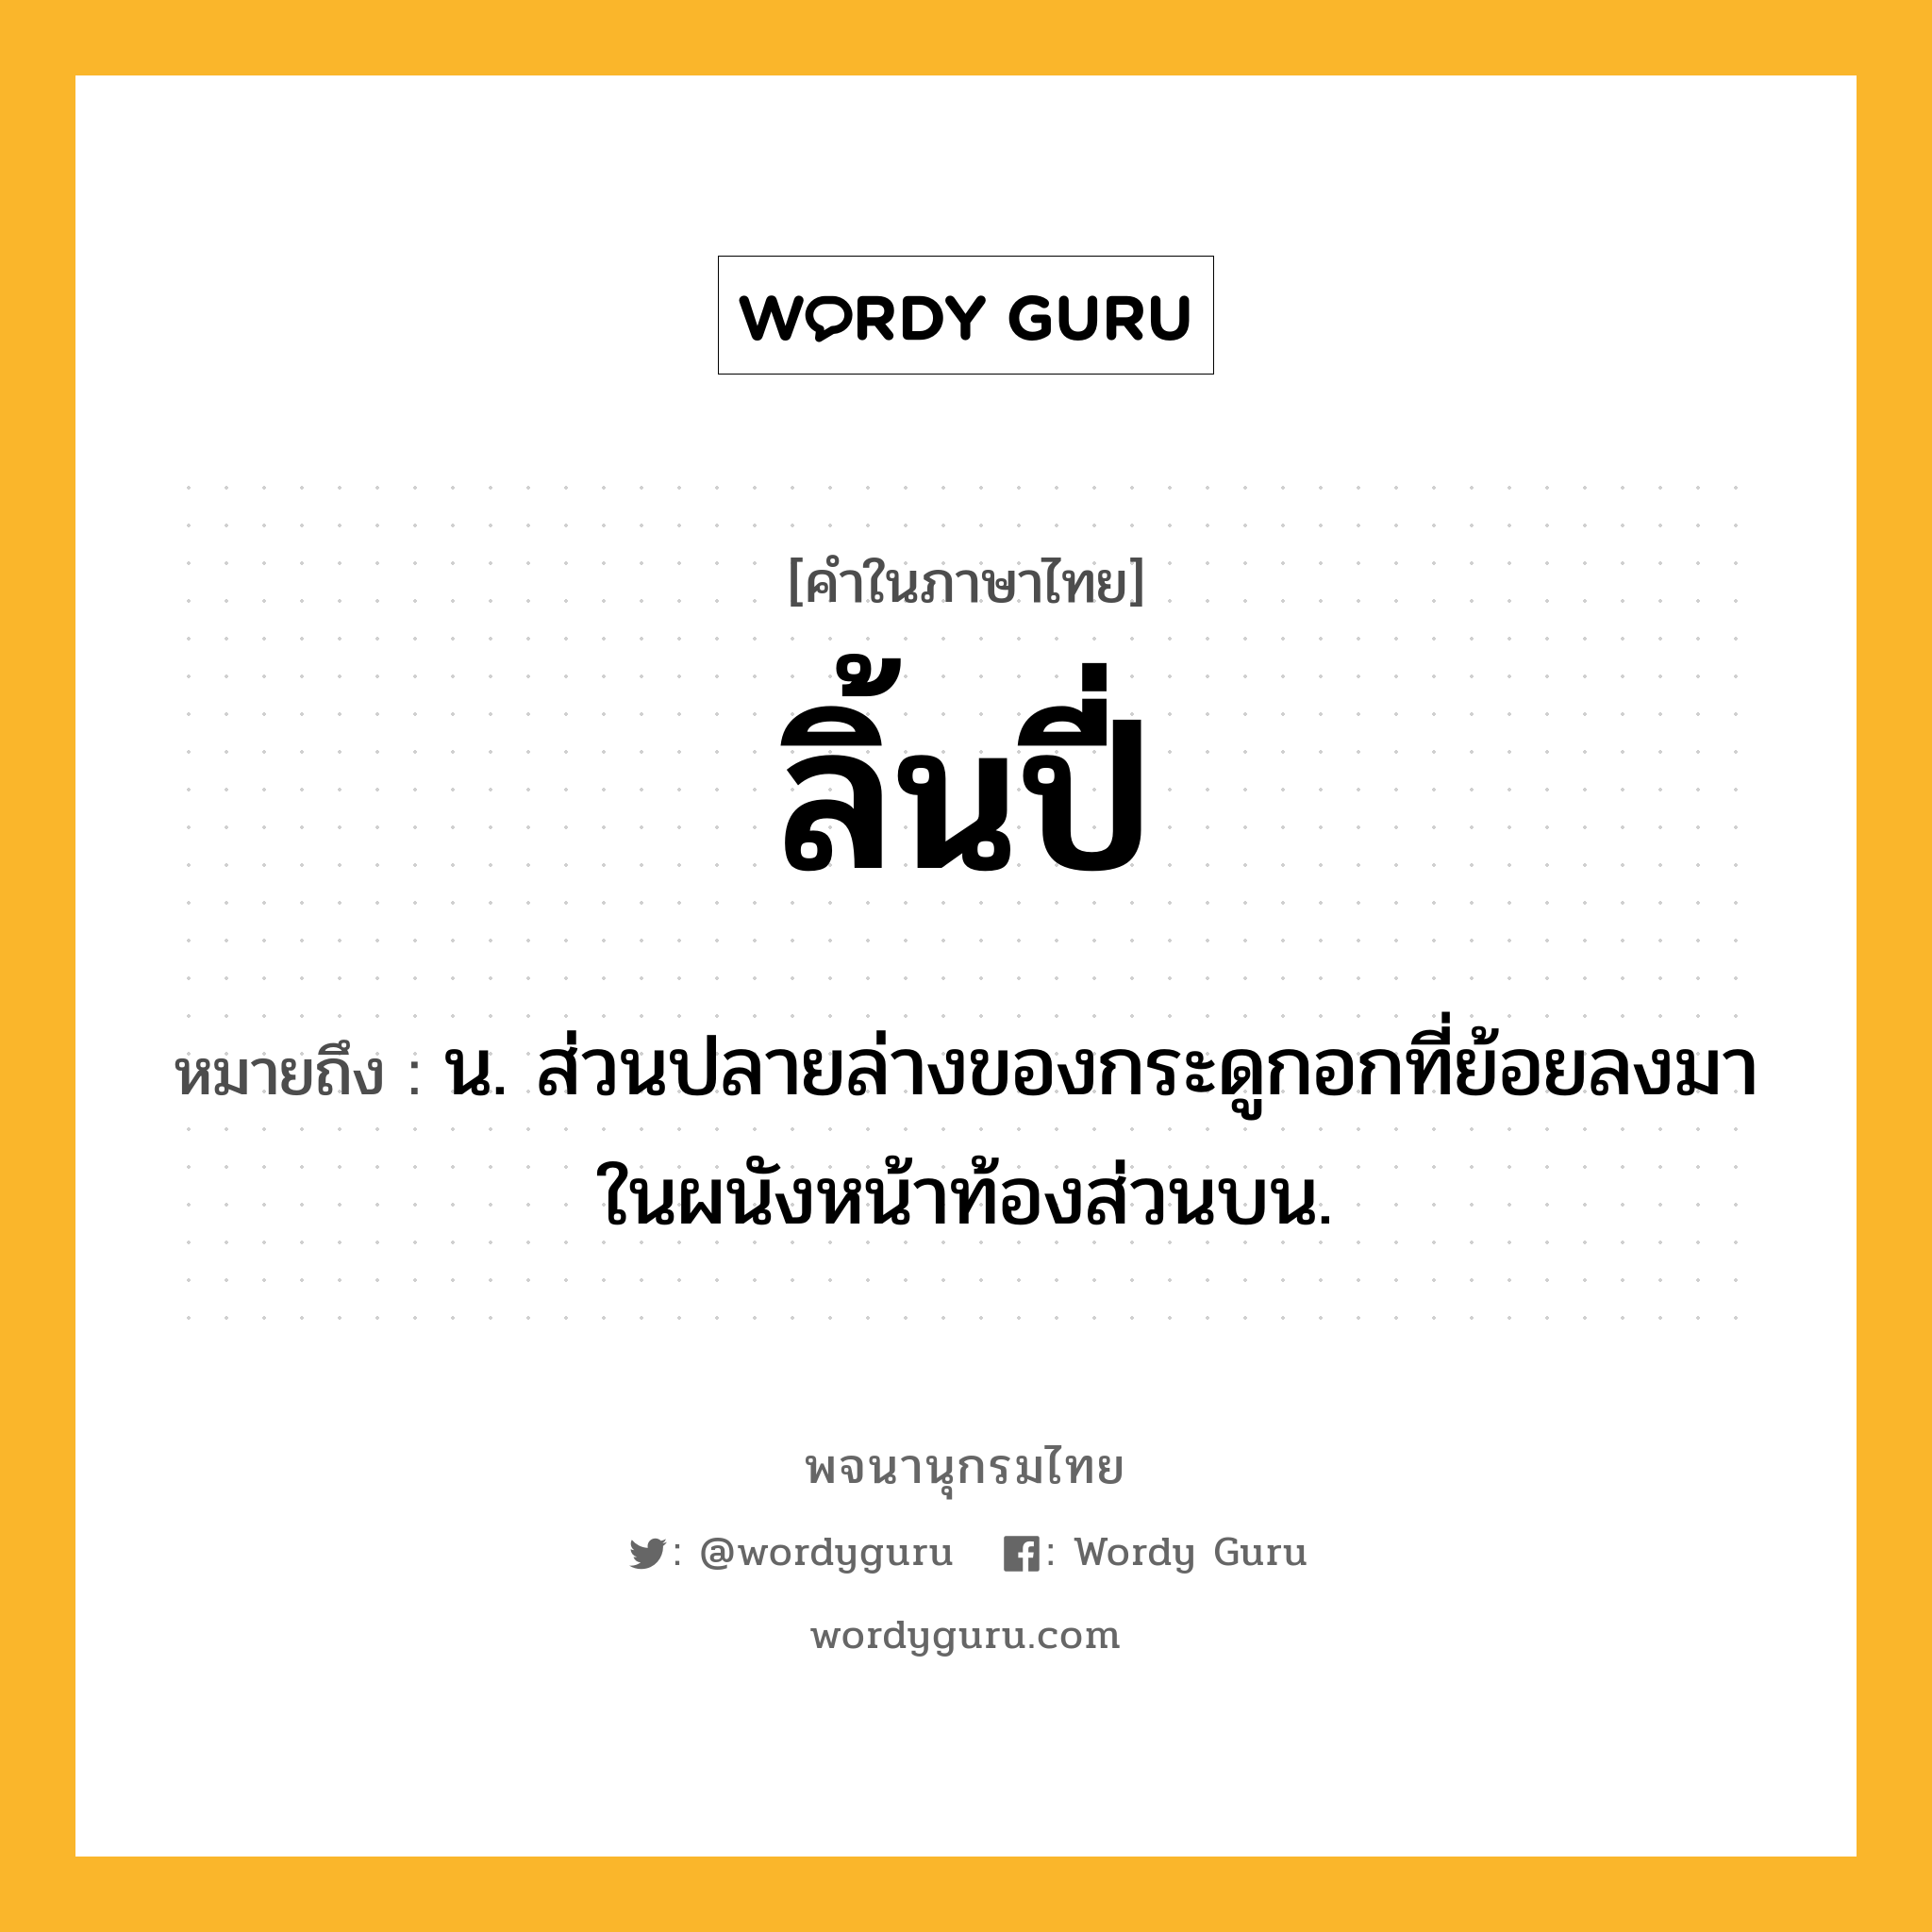 ลิ้นปี่ หมายถึงอะไร?, คำในภาษาไทย ลิ้นปี่ หมายถึง น. ส่วนปลายล่างของกระดูกอกที่ย้อยลงมาในผนังหน้าท้องส่วนบน.